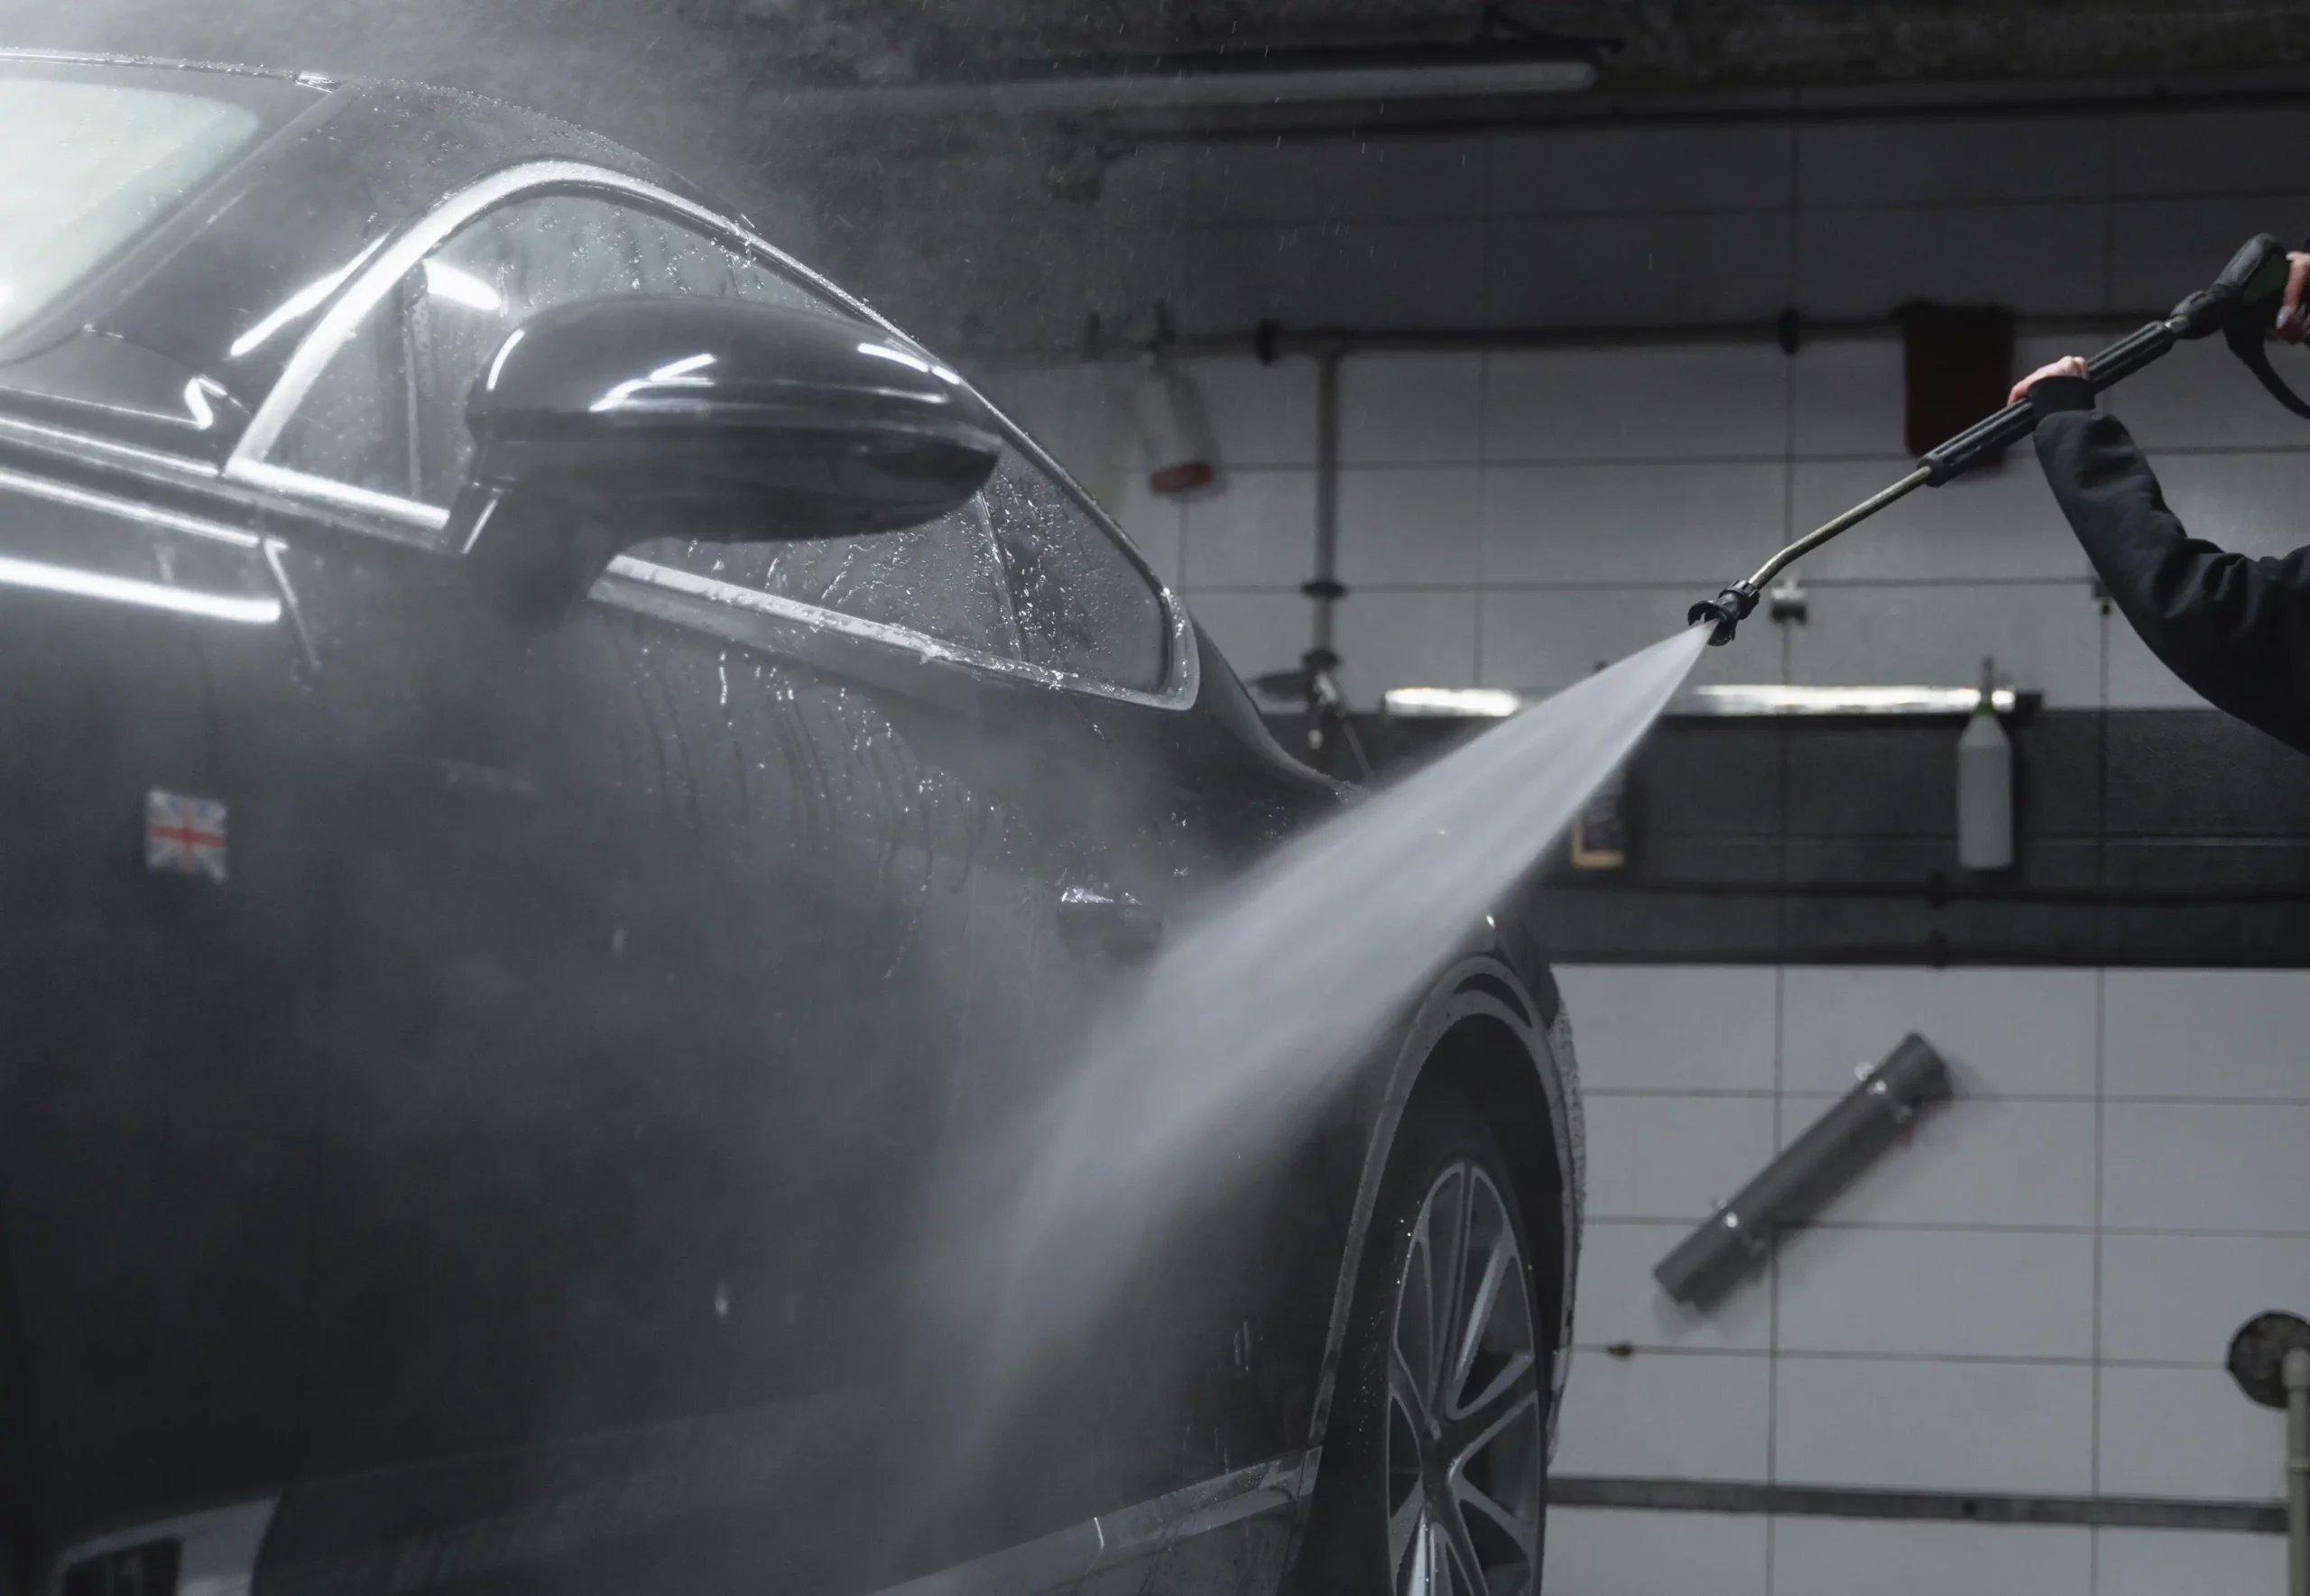 Tekniker bruger en højtryksrenser til at vaske bil på værksted.